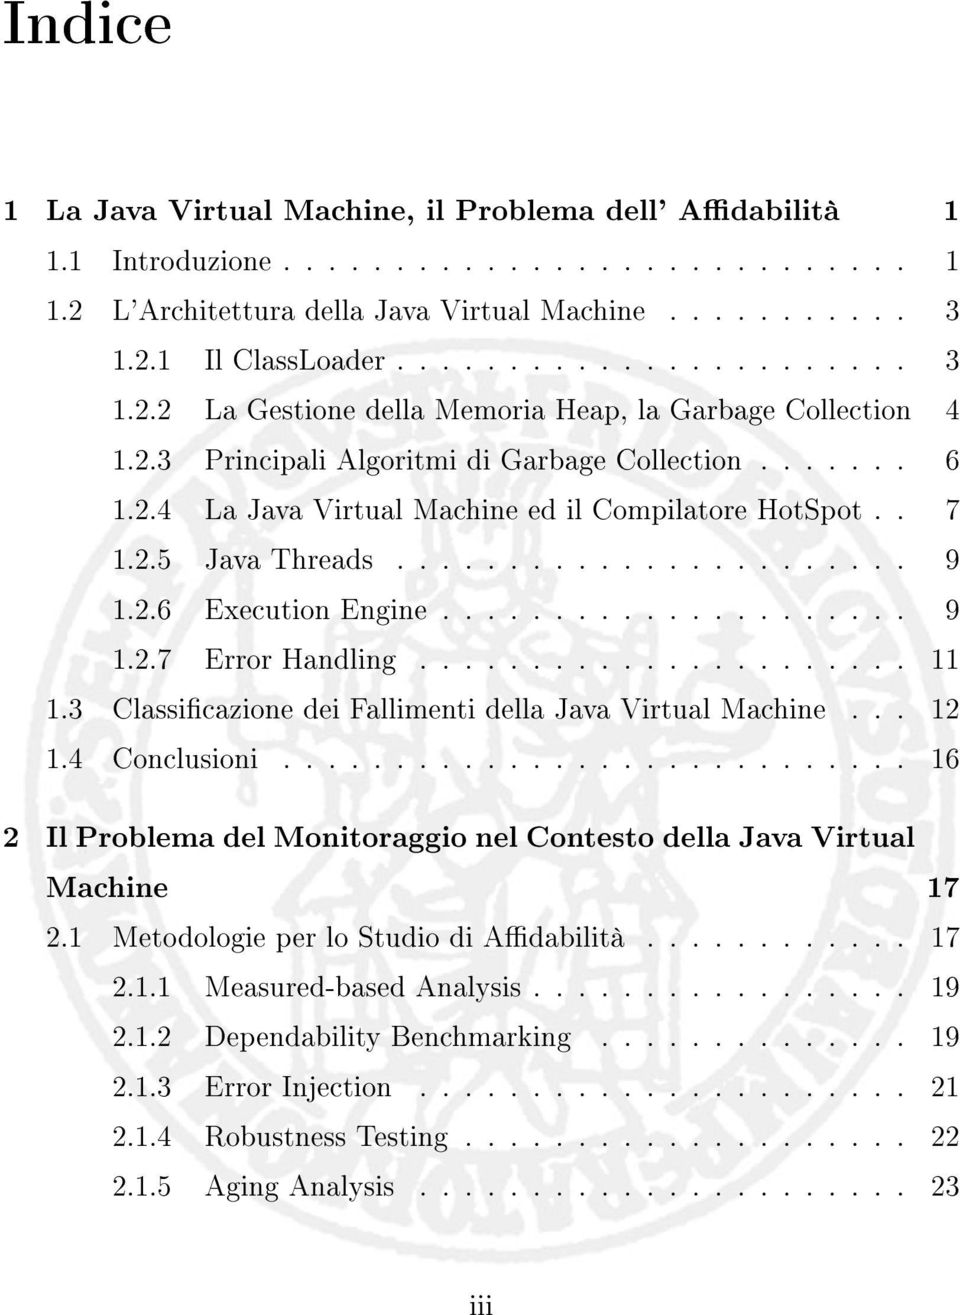 ..................... 11 1.3 Classicazione dei Fallimenti... 12 1.4 Conclusioni............................ 16 2 Il Problema del Monitoraggio nel Contesto della Java Virtual Machine 17 2.